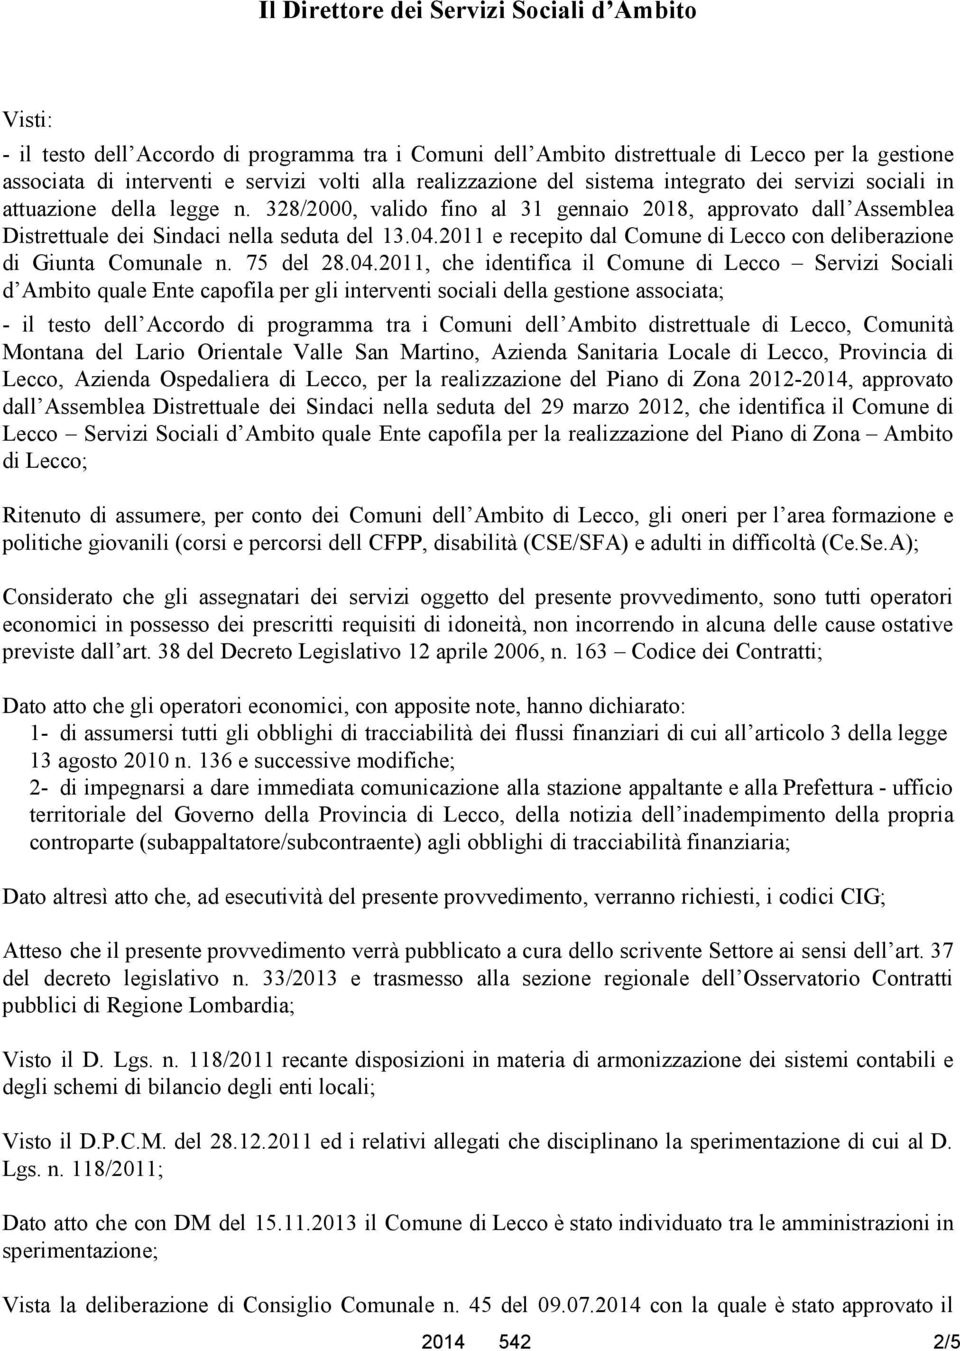 2011 e recepito dal Comune di Lecco con deliberazione di Giunta Comunale n. 75 del 28.04.